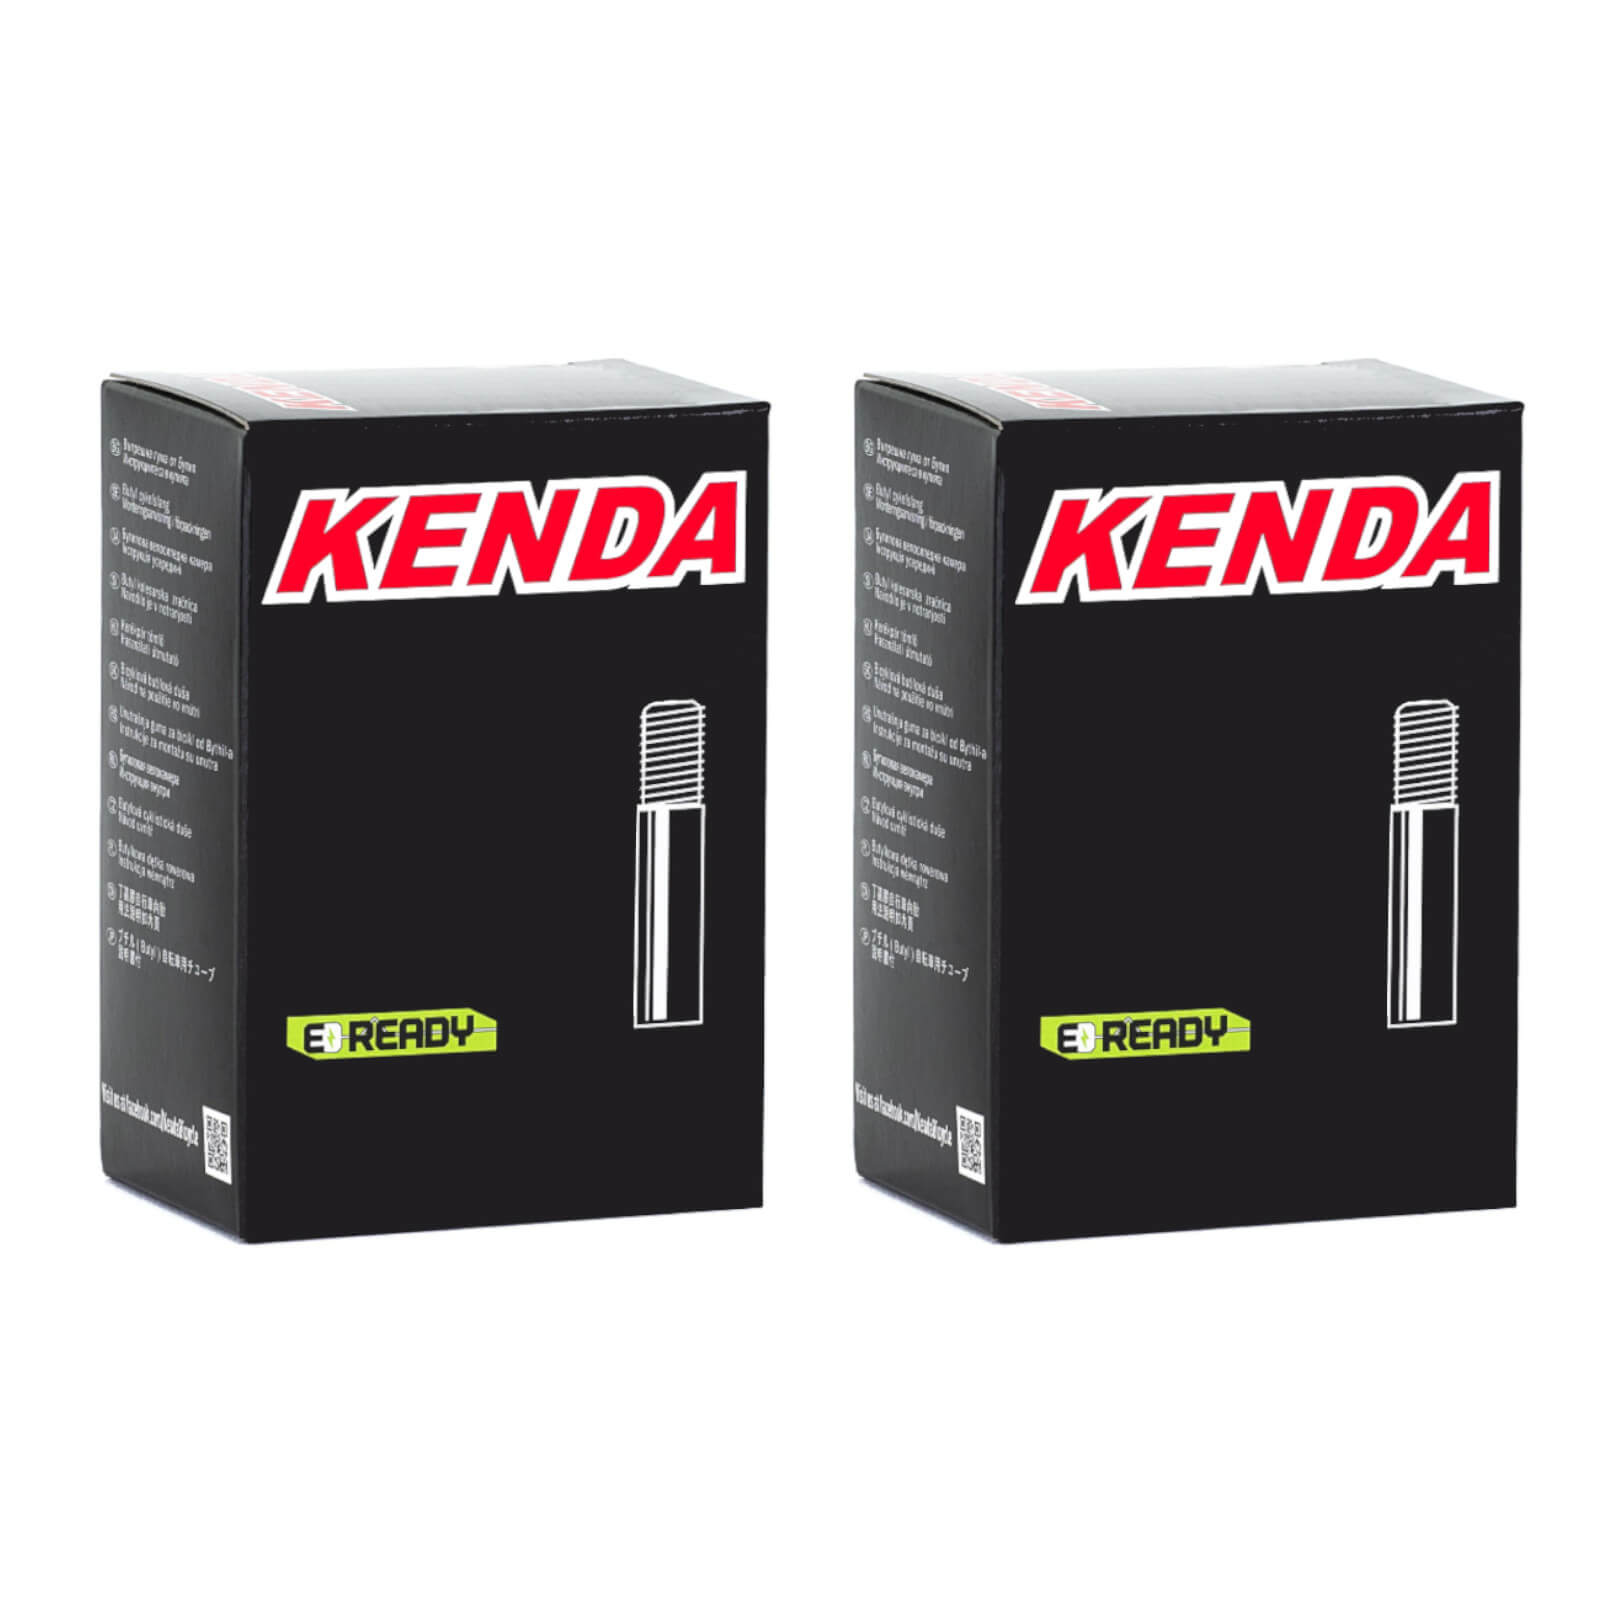 Kenda 26x2.75-3.0" 26 Inch Schrader Valve Bike Inner Tube Pack of 2